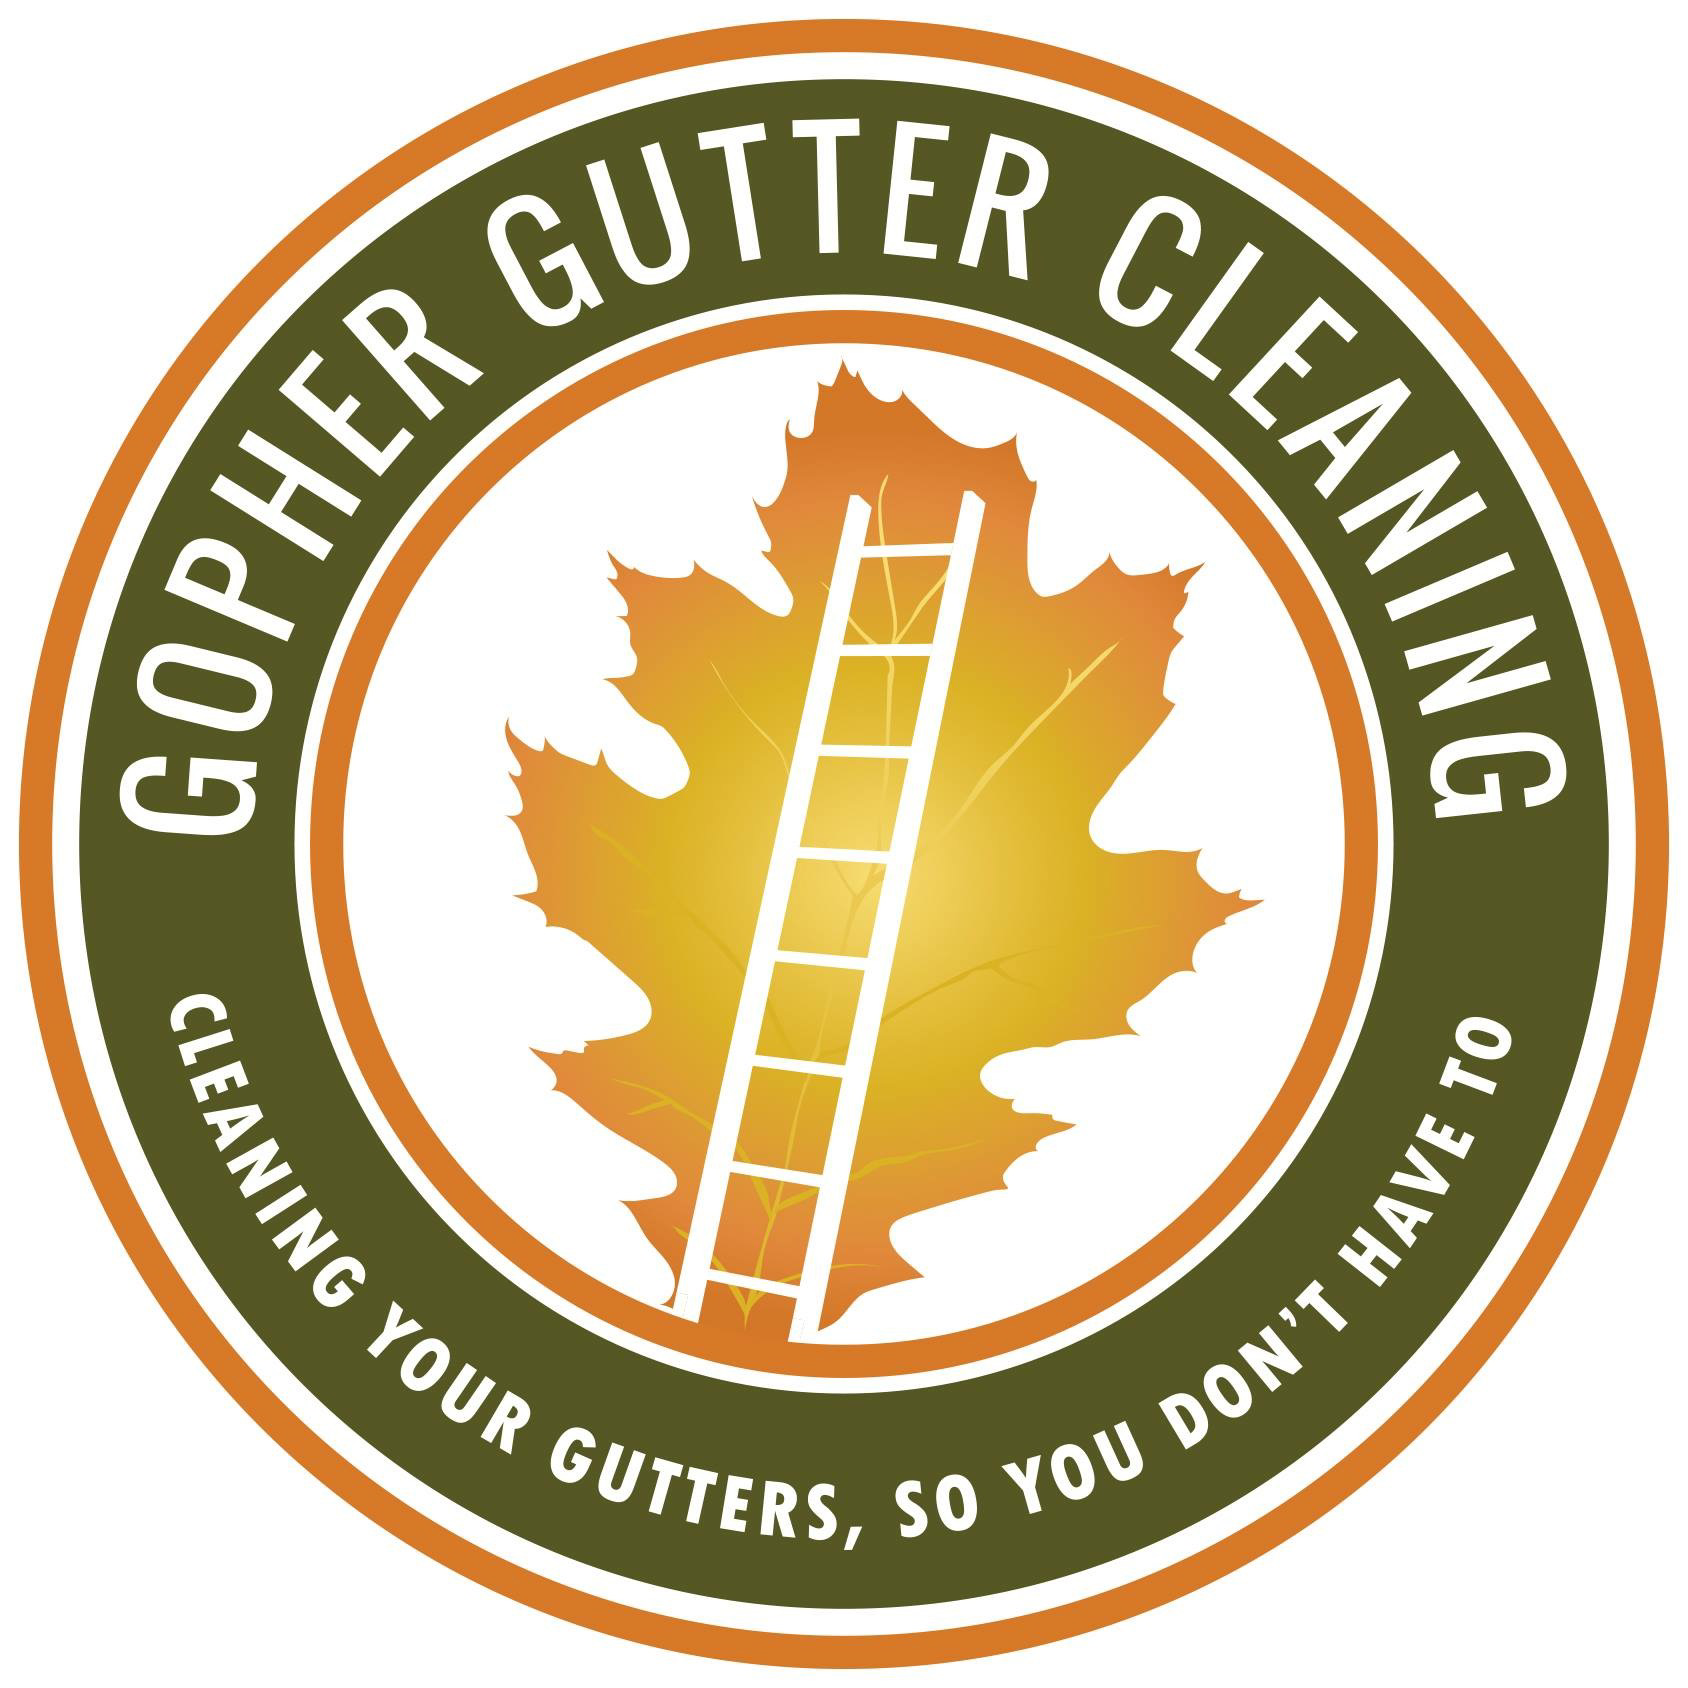 Gopher Gutter Cleaning 3258 146th Ave NE, Ham Lake Minnesota 55304